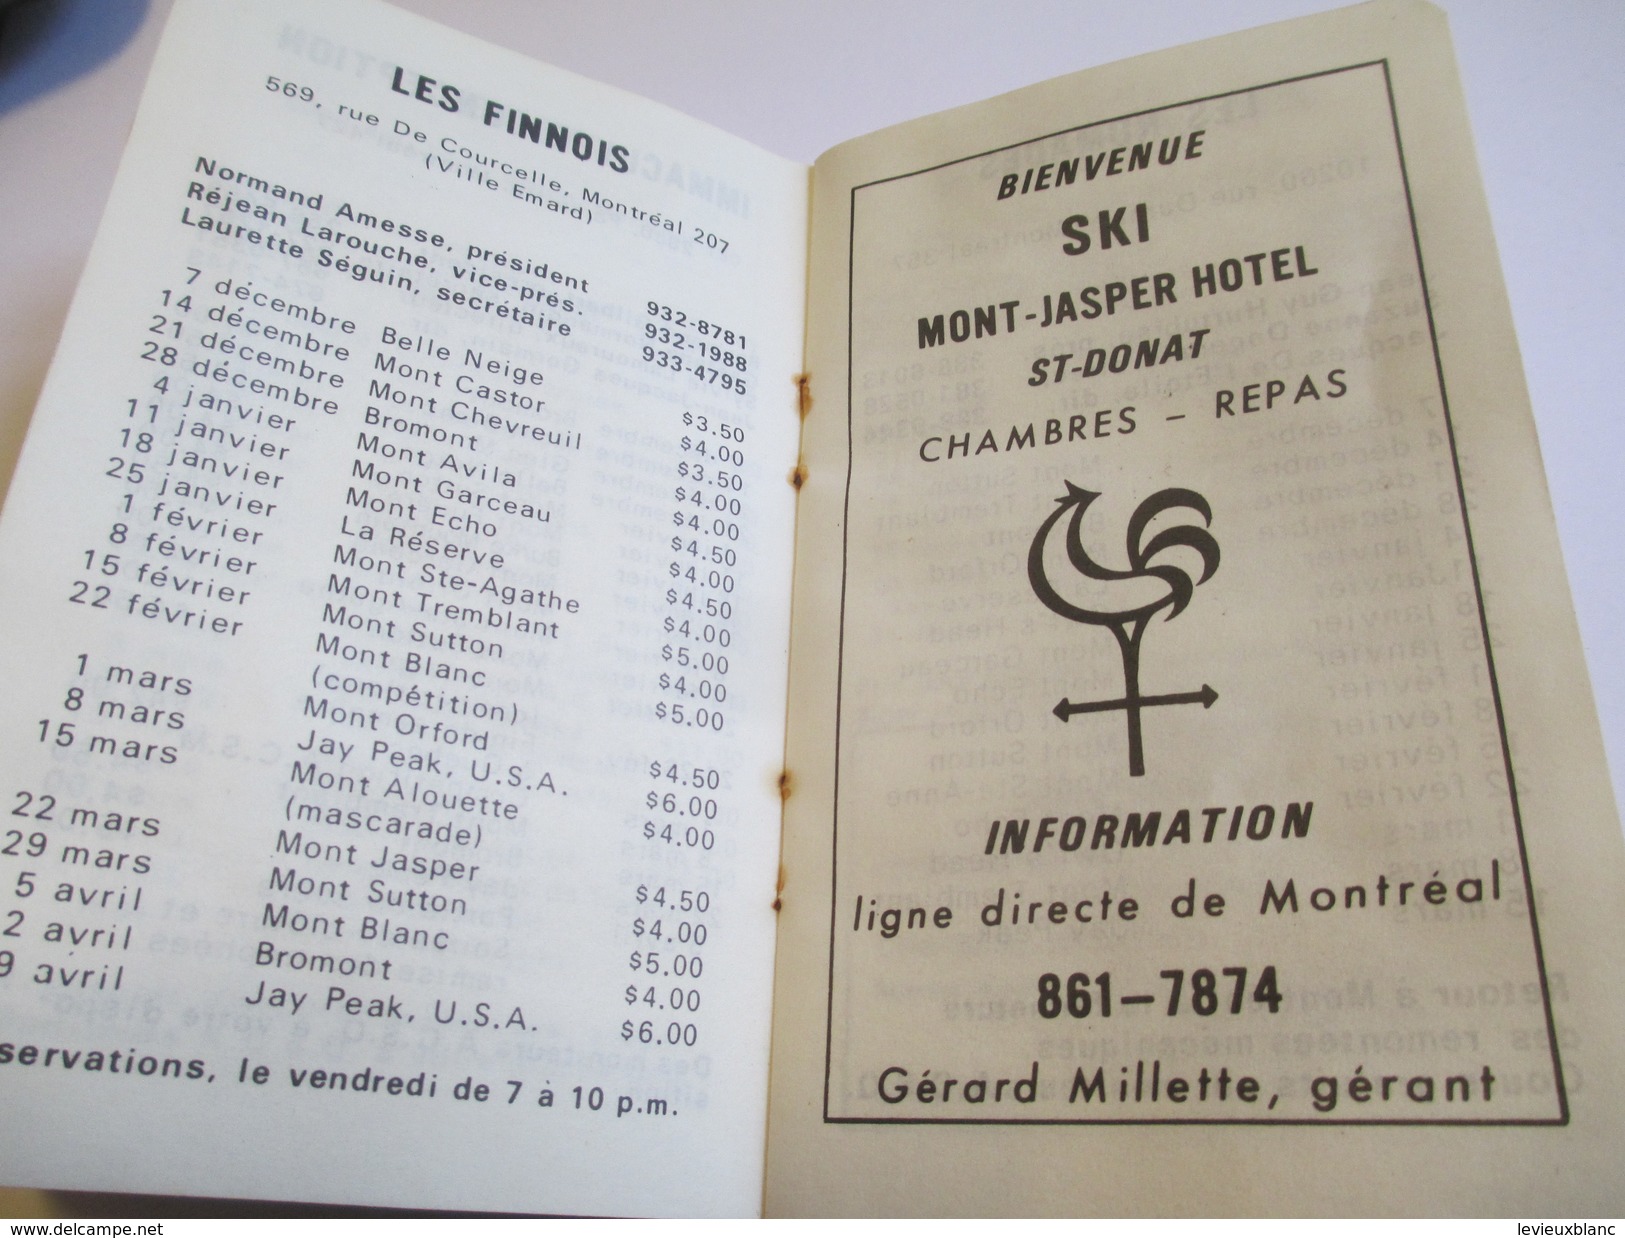 Fascicule/Sports/Passeport Pour Le Monde Du Ski/Assoc.des Clubs De Ski De Montréal/Canada/1970    SPO111 - 1950-Aujourd'hui